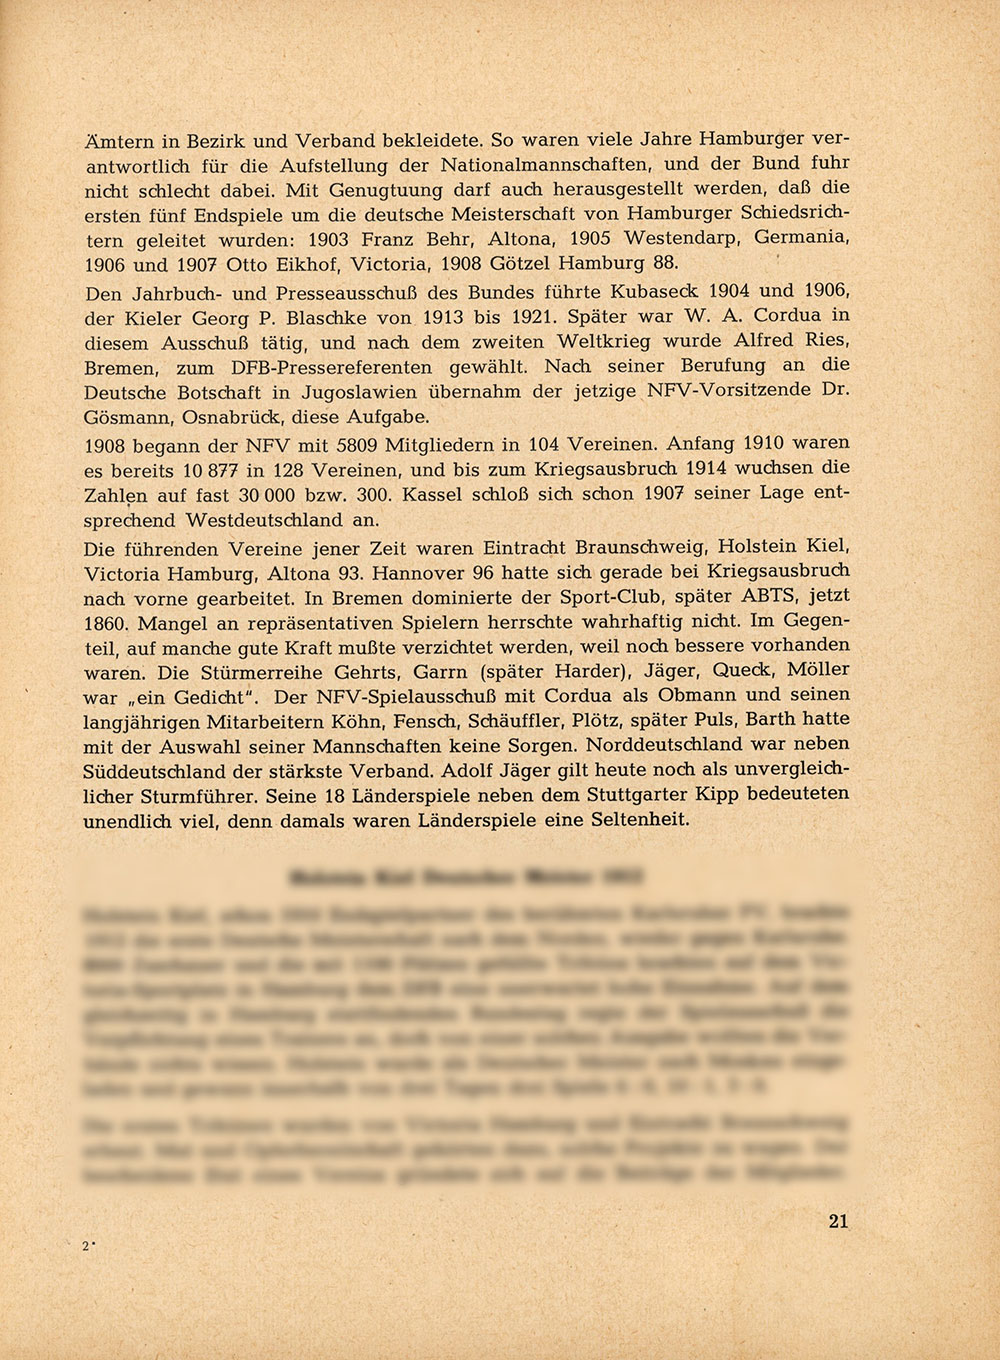 50 Jahre Norddeutscher Fußball-Verband NFV 1955;. Aus der Phönix-Chronik 1903 und der Festschrift von 1955